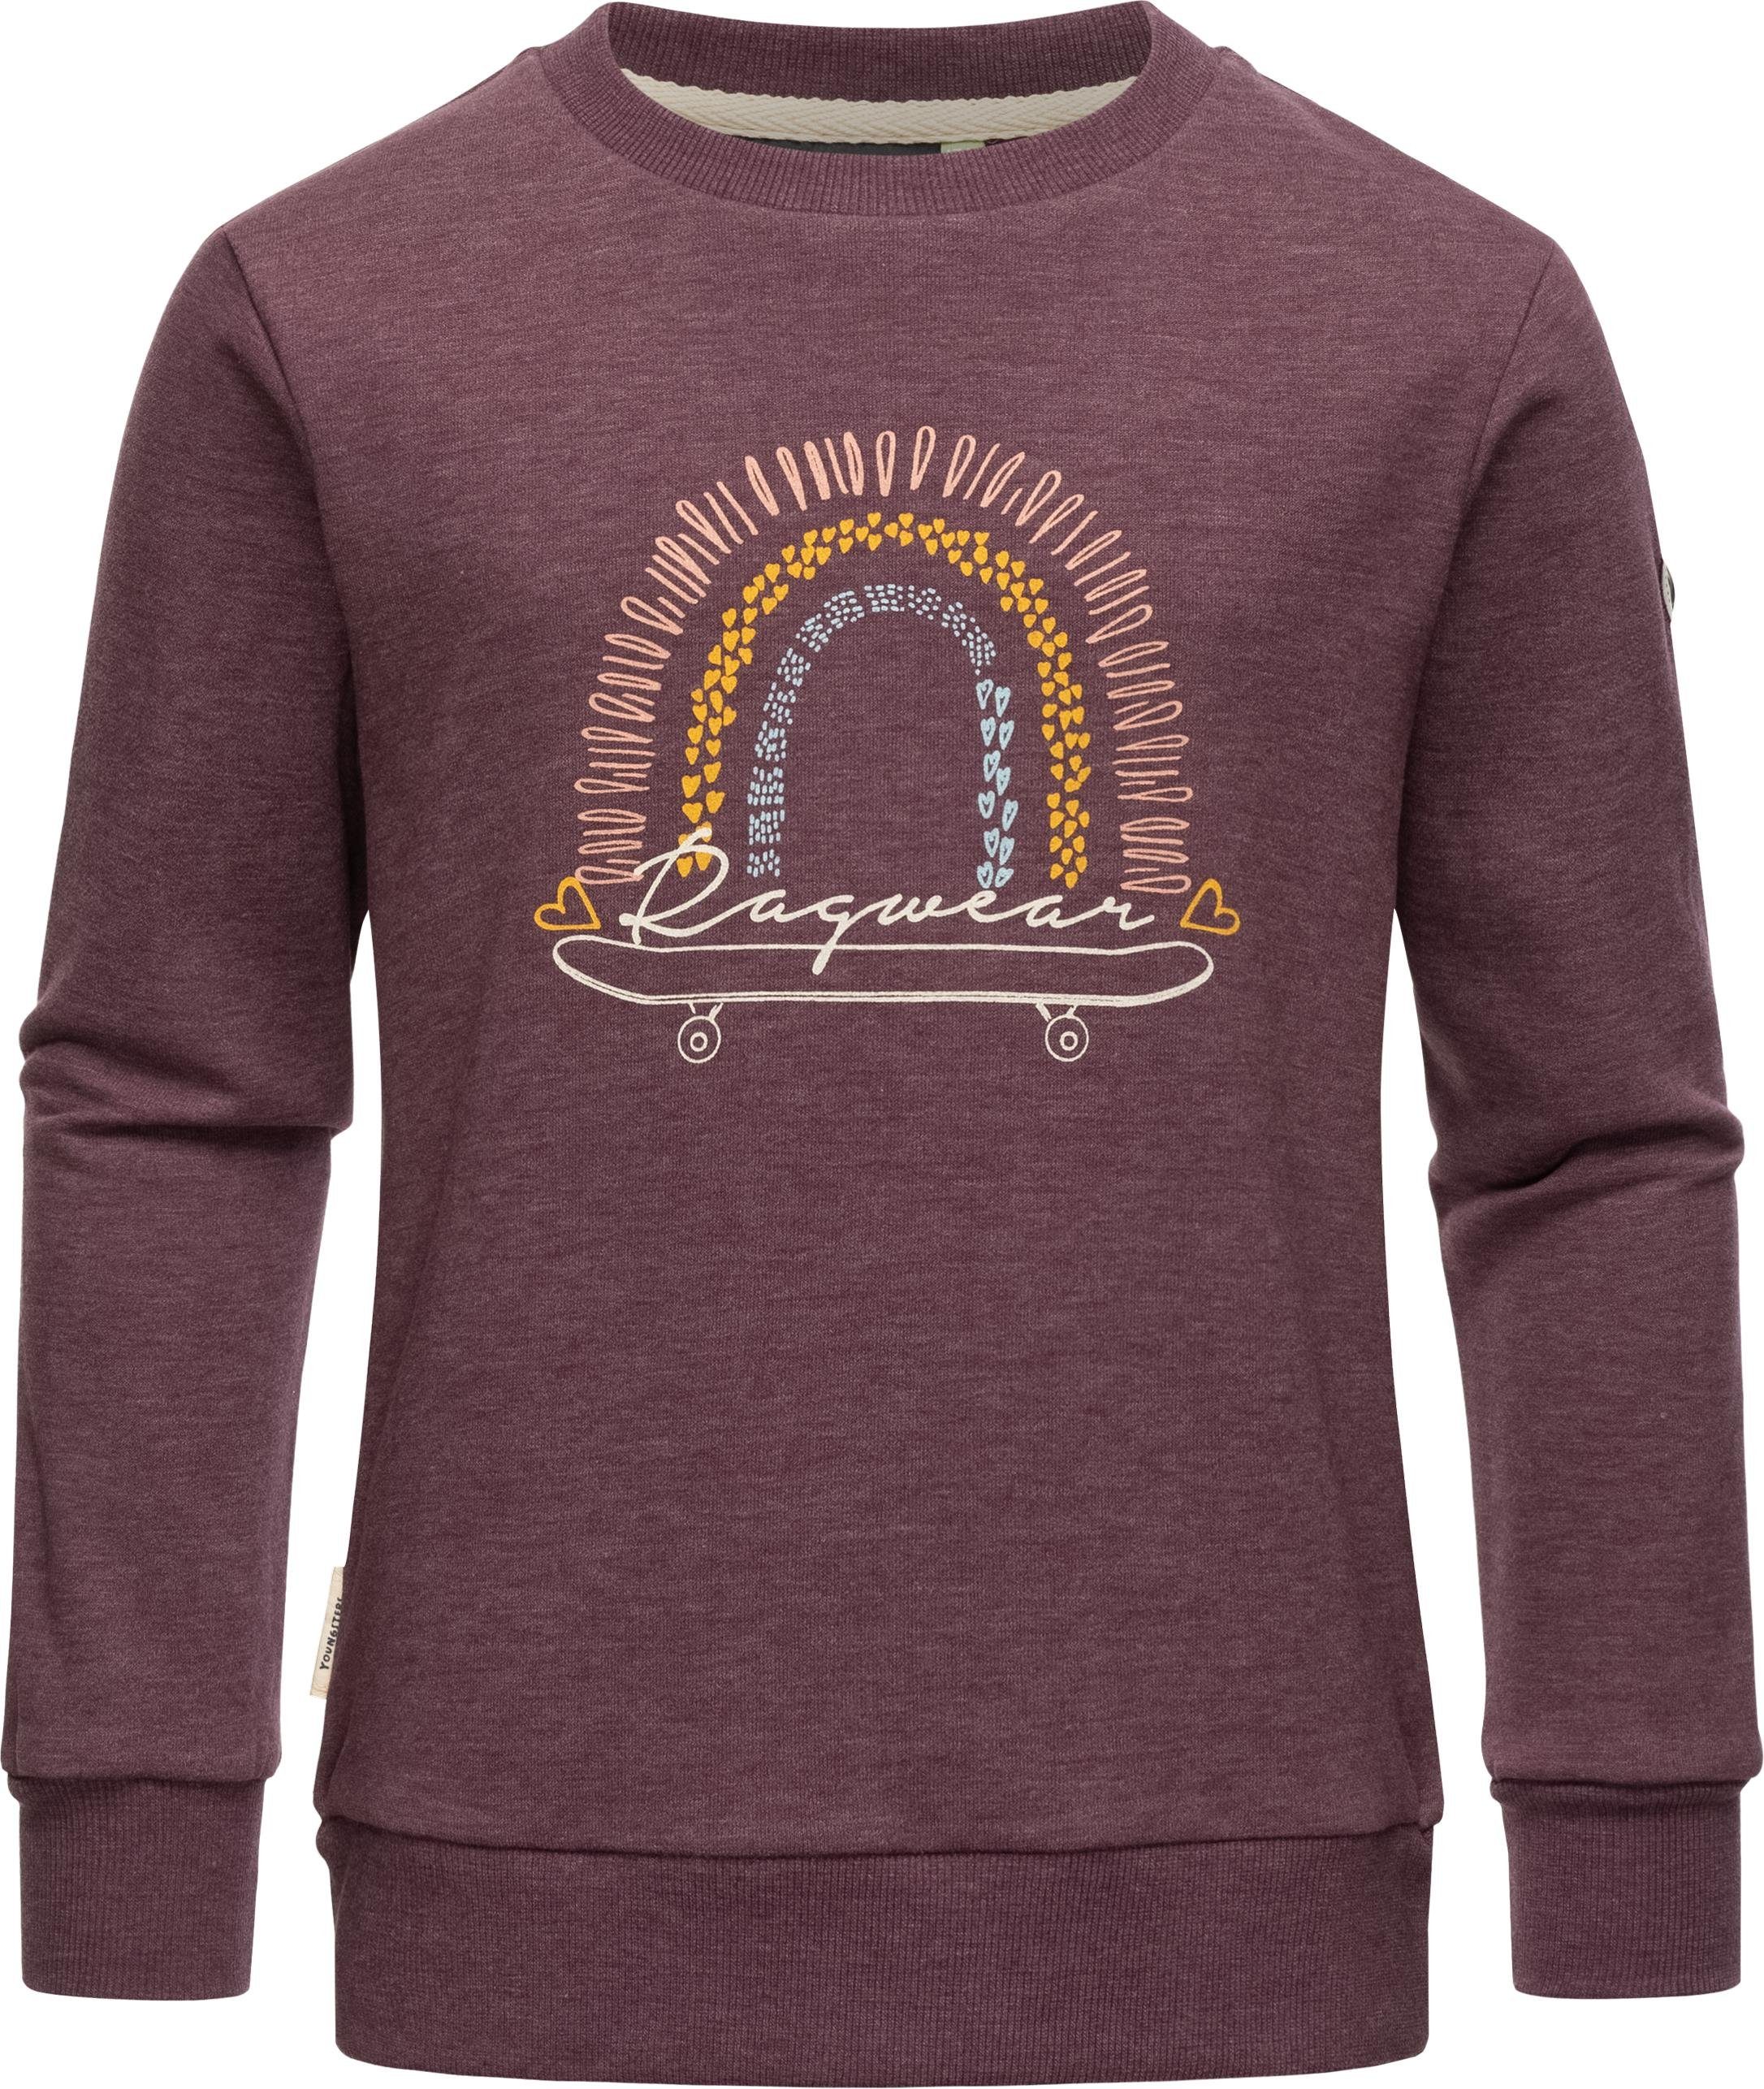 Ragwear Sweater Evka Print Organic stylisches Mädchen Sweatshirt mit coolem Print pflaume | Sweatshirts